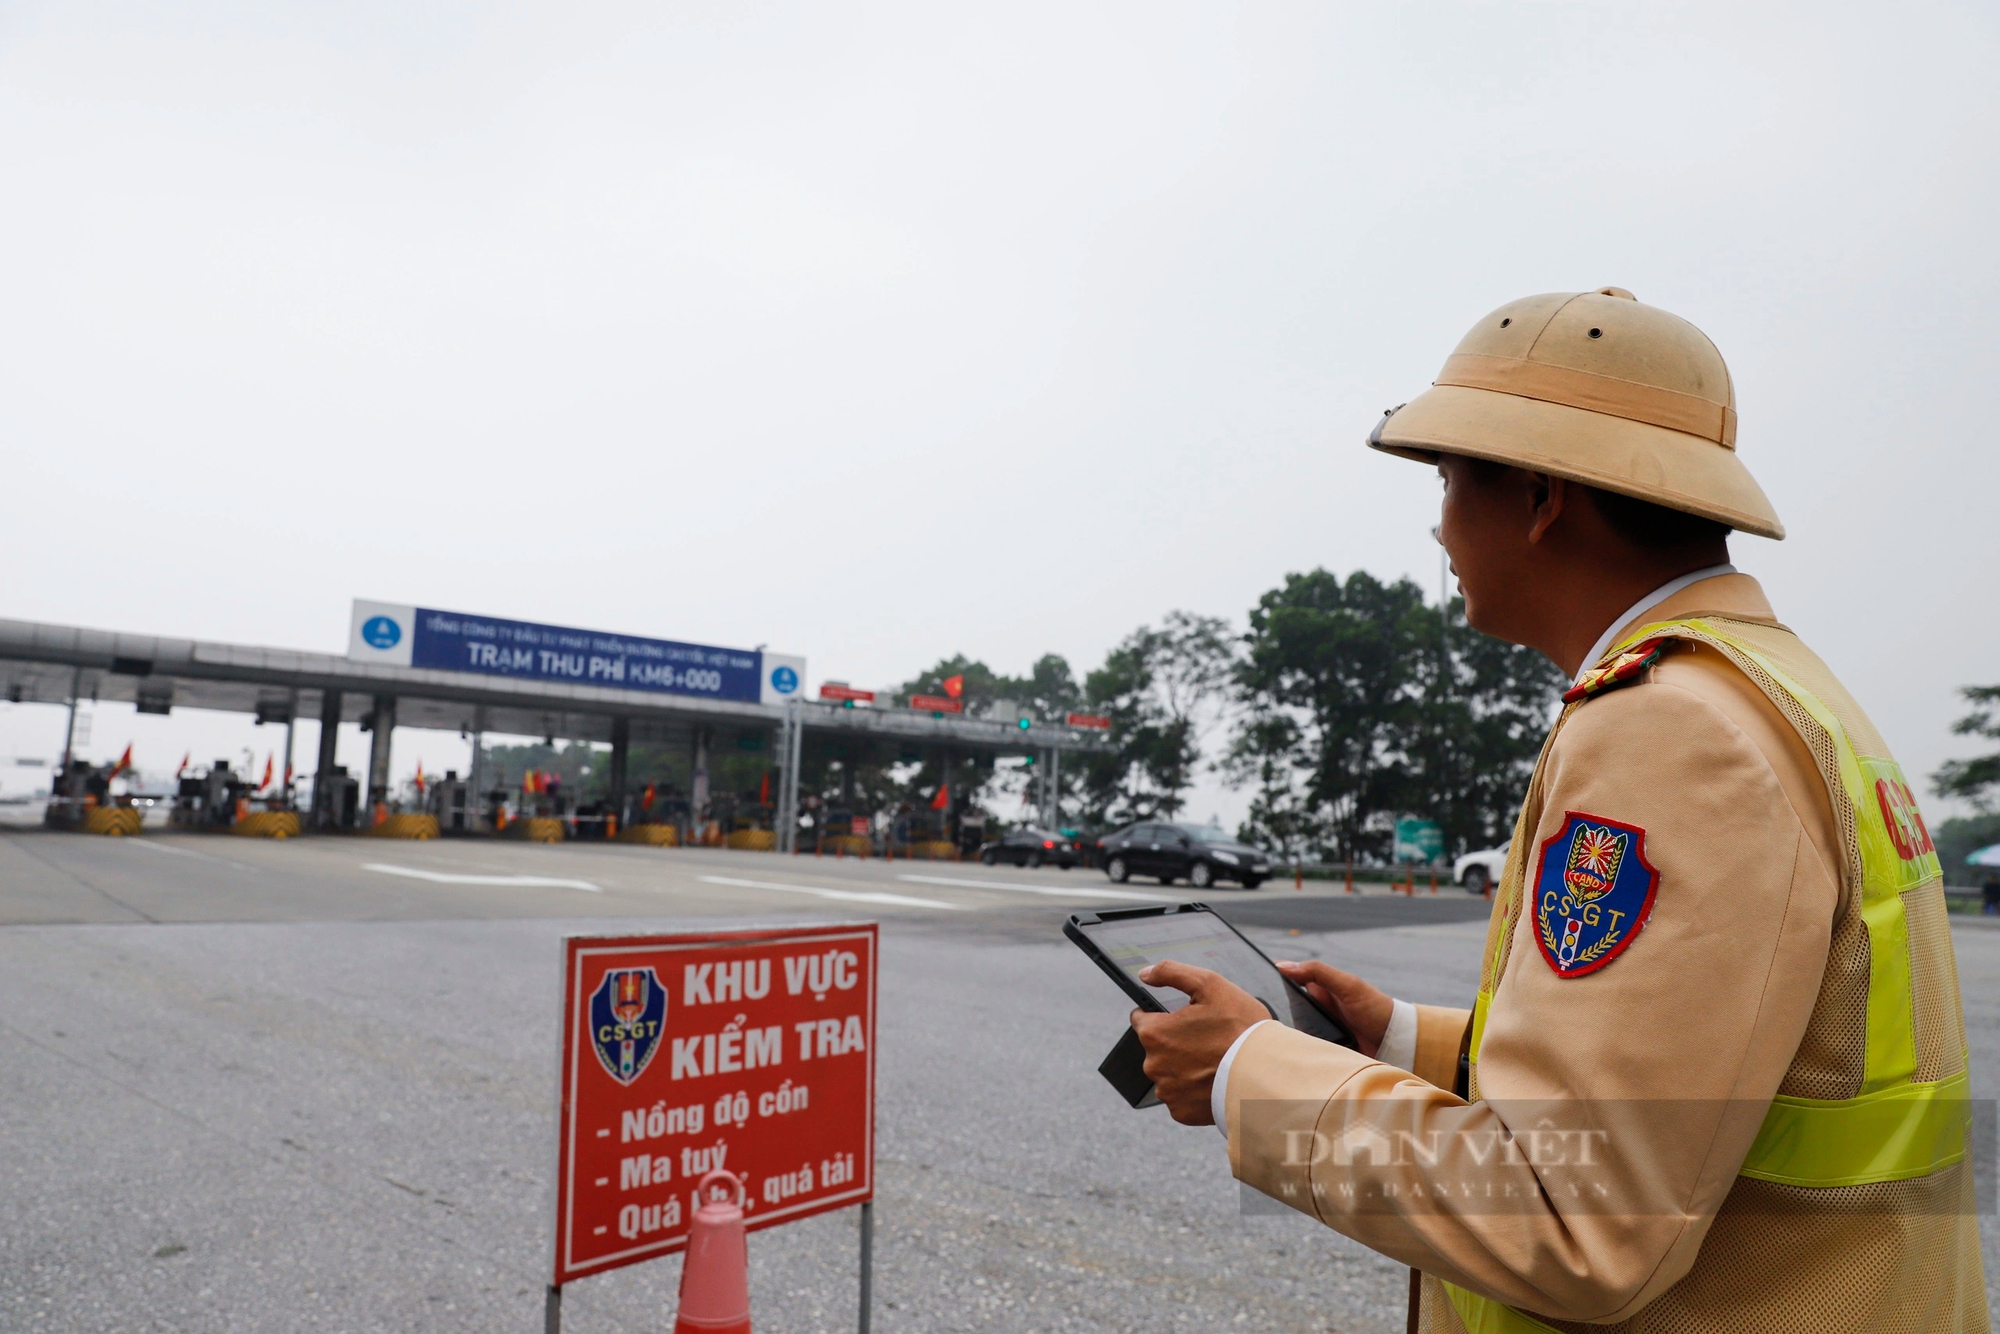 Toàn cảnh "mắt thần" giám sát xử phạt hàng nghìn trường hợp vi phạm trên cao tốc Nội Bài - Lào Cai- Ảnh 4.